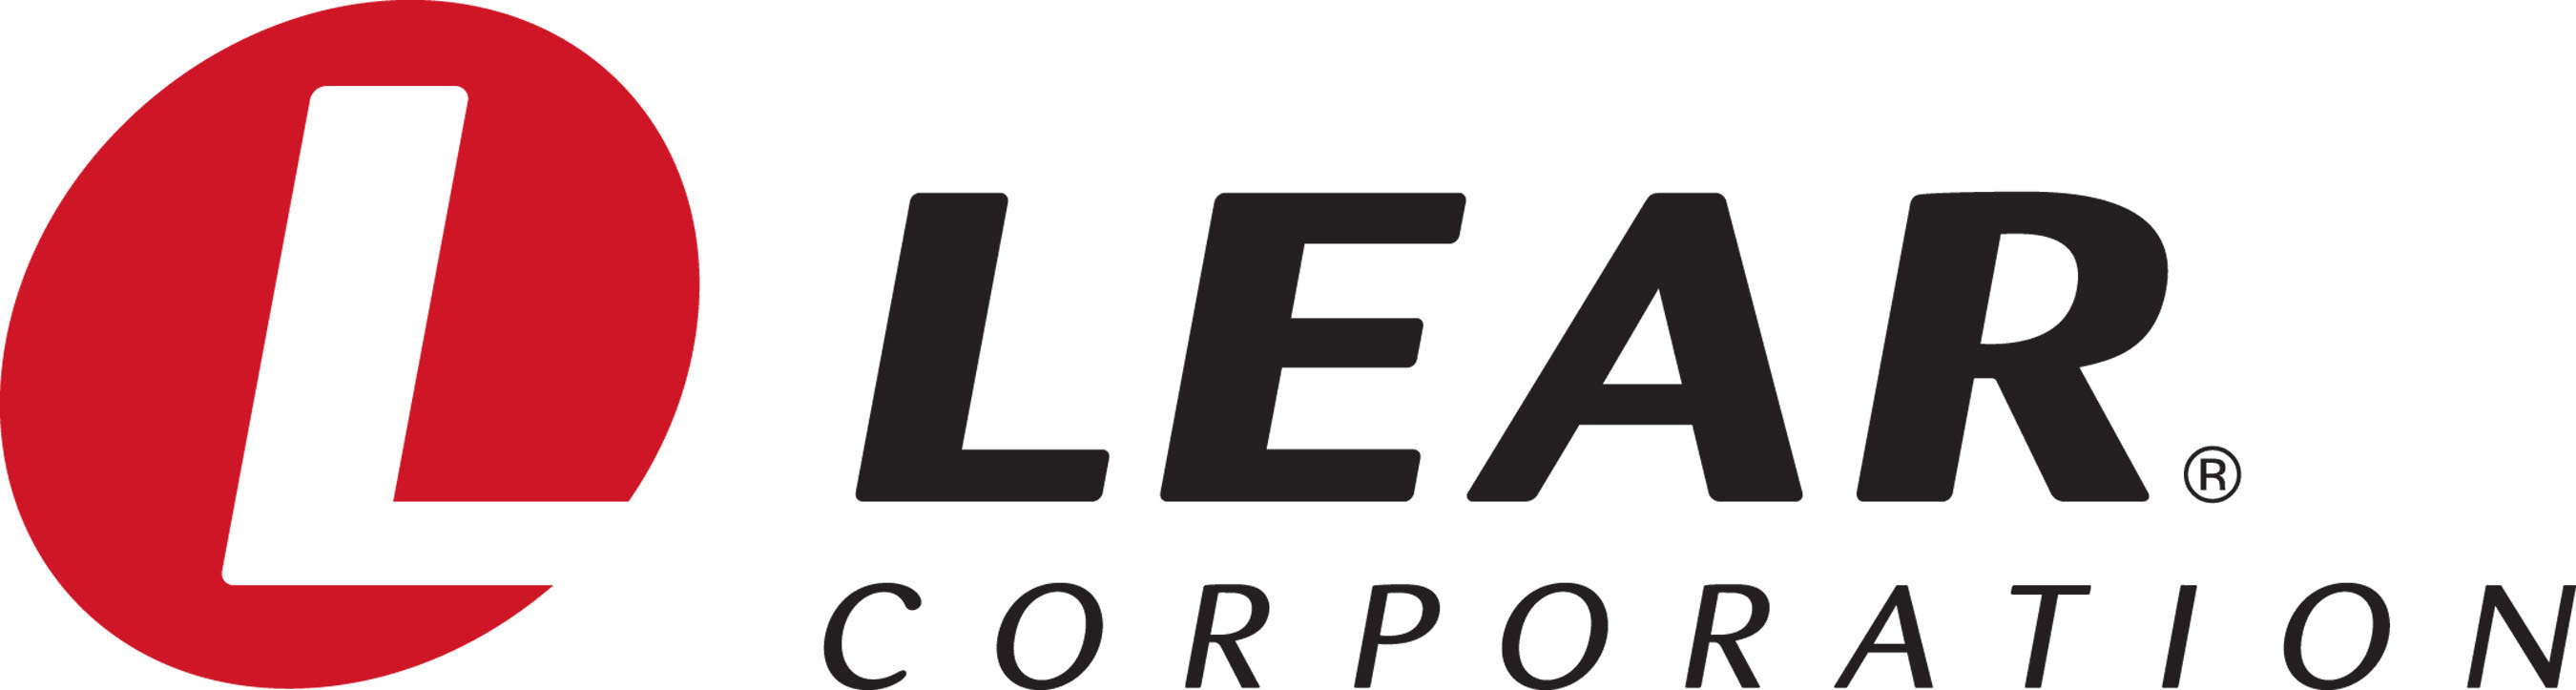 Lear Corporation Logo. (PRNewsFoto/Lear Corporation) (PRNewsFoto/Lear Corporation)